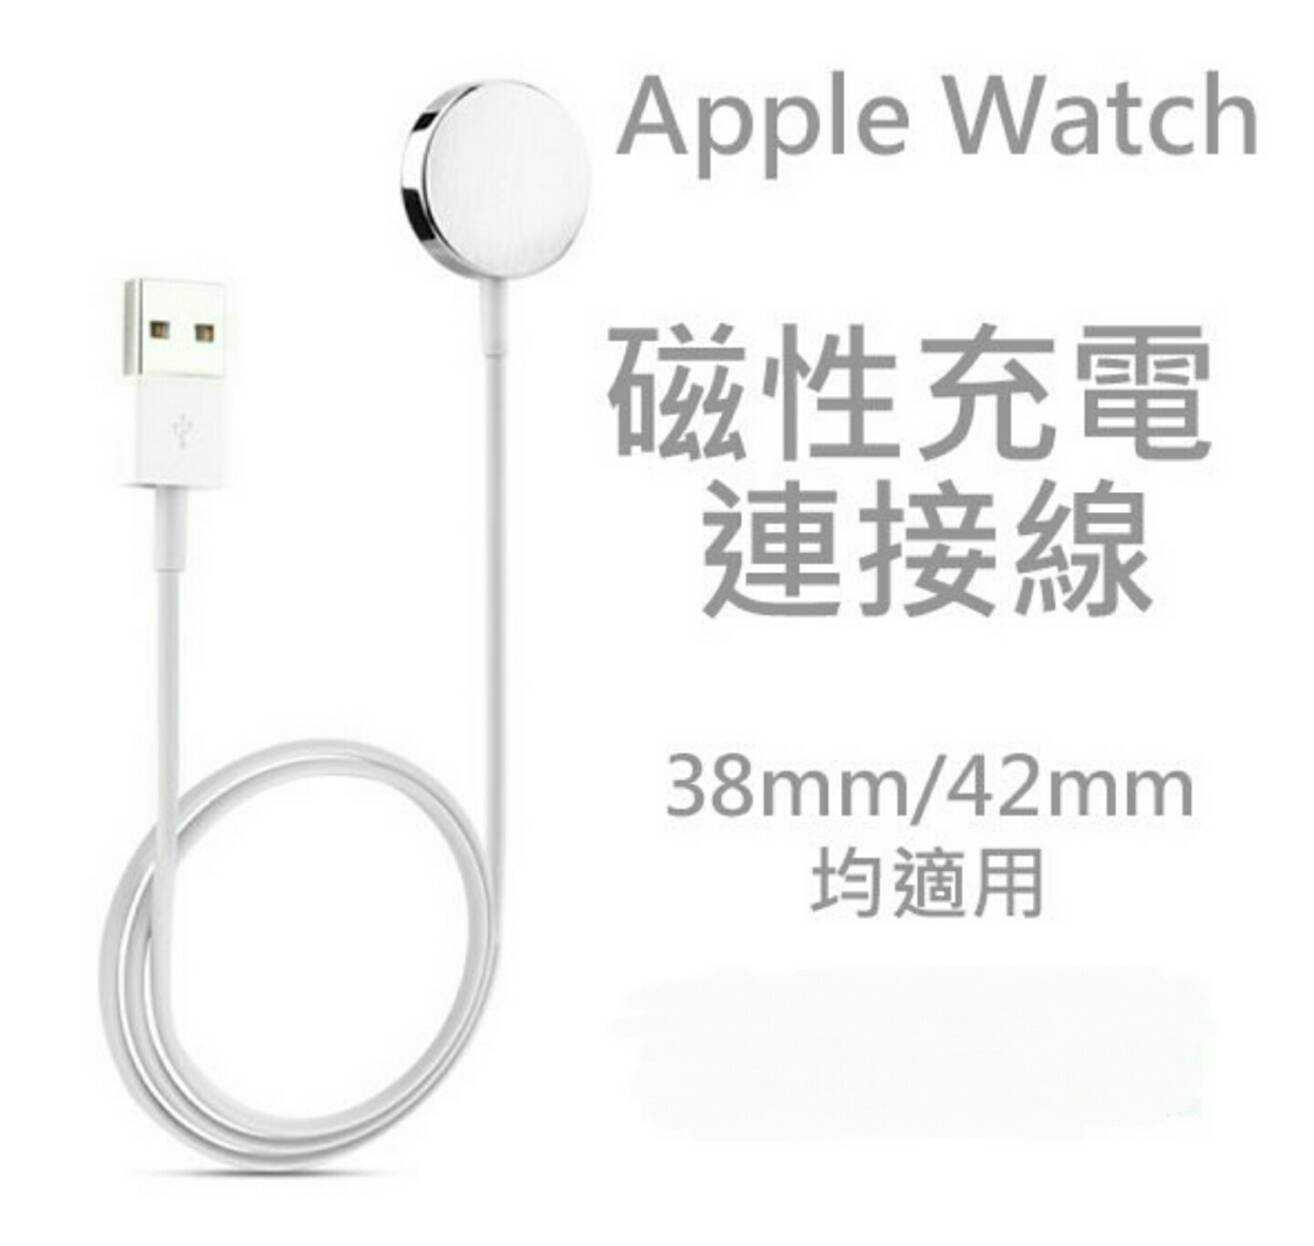 【保固一年】Apple Watch 38mm/42mm 磁性充電連接線/智慧手錶充電線